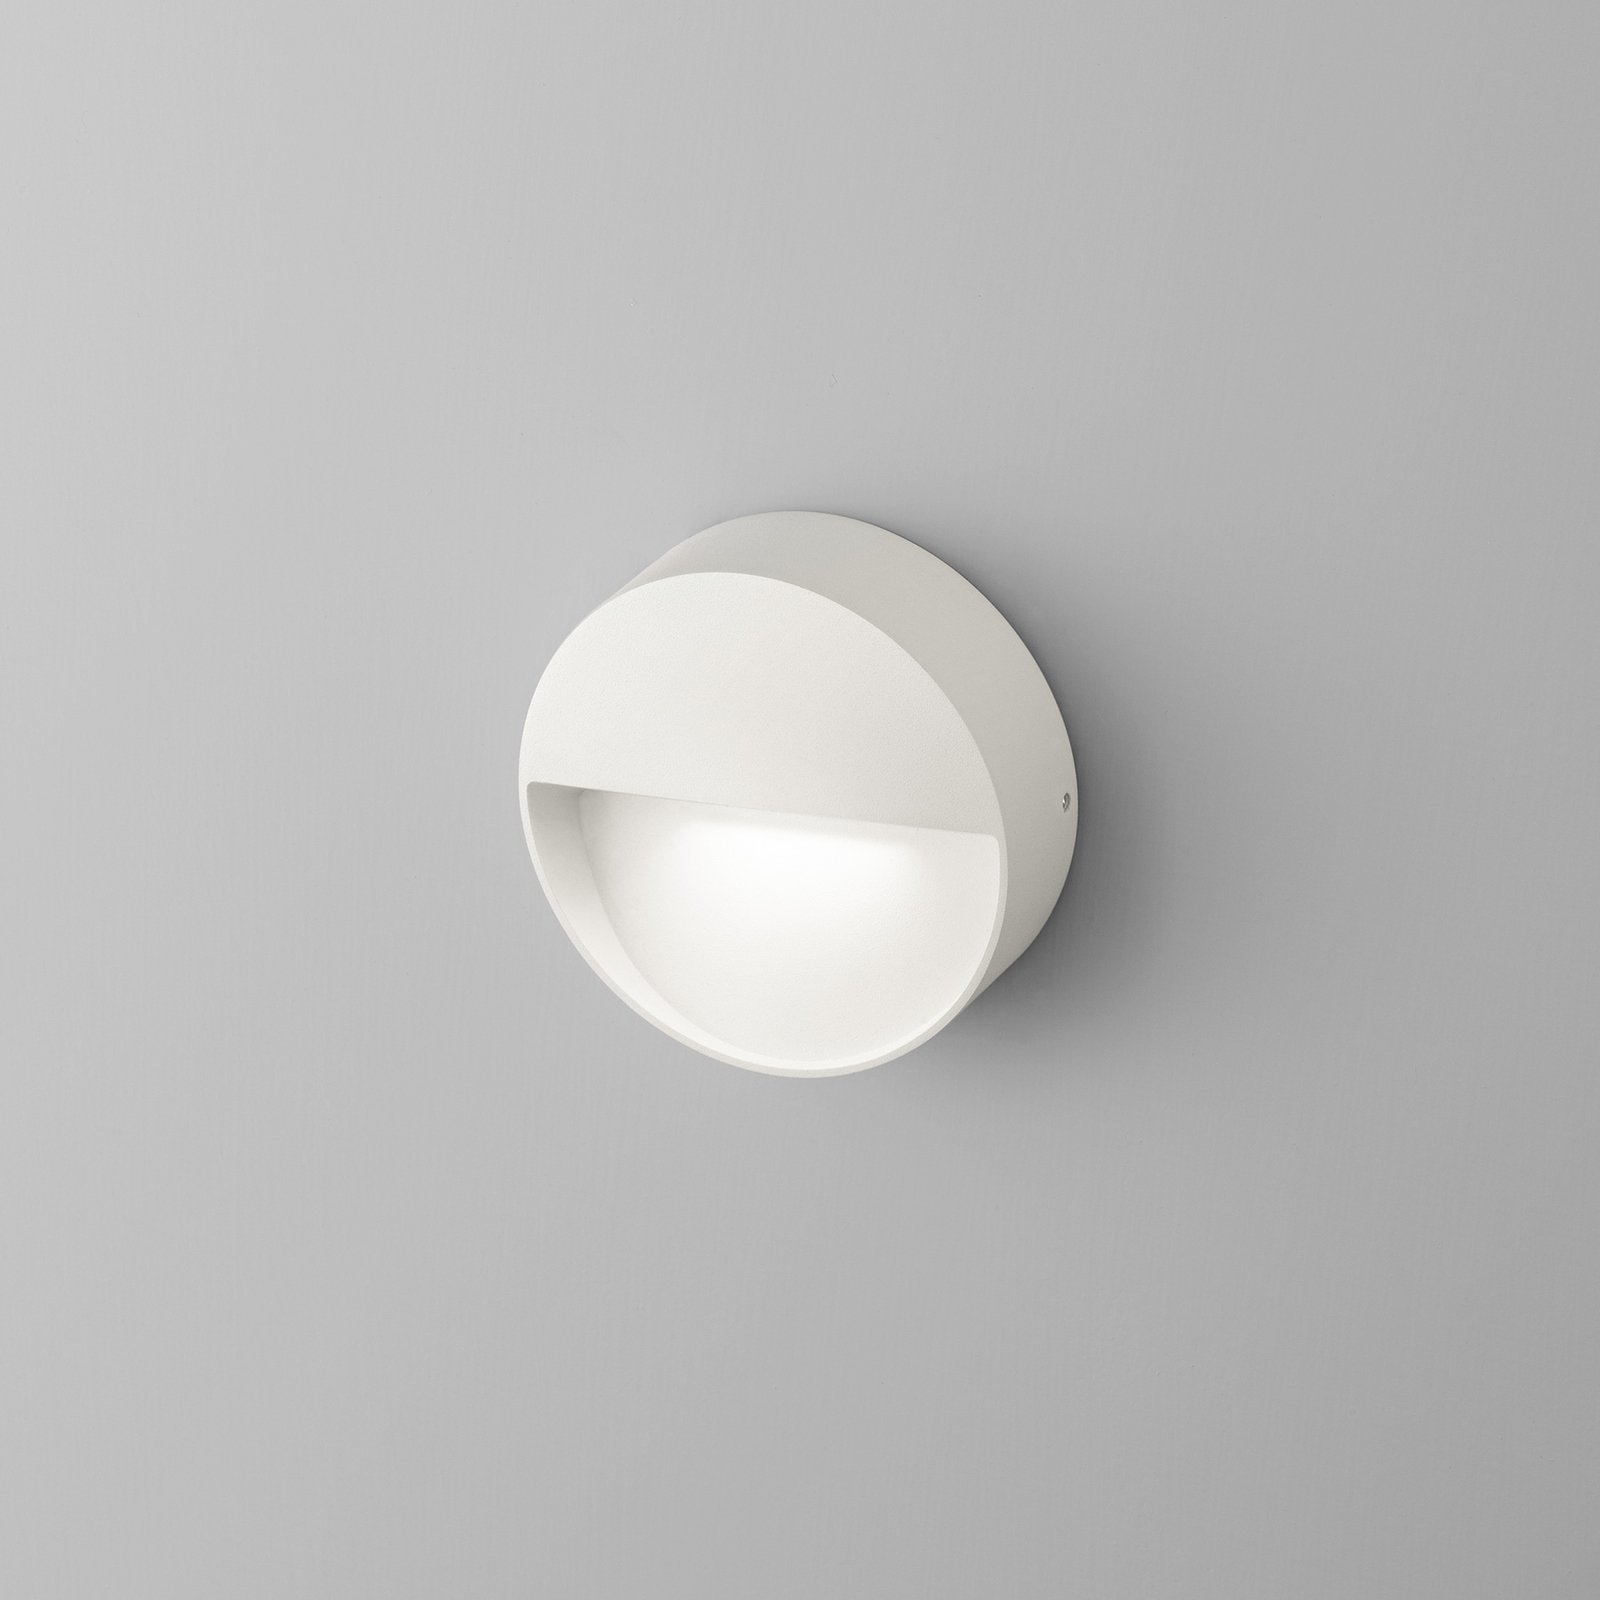 Egger Vigo aplique LED con IP54, blanco